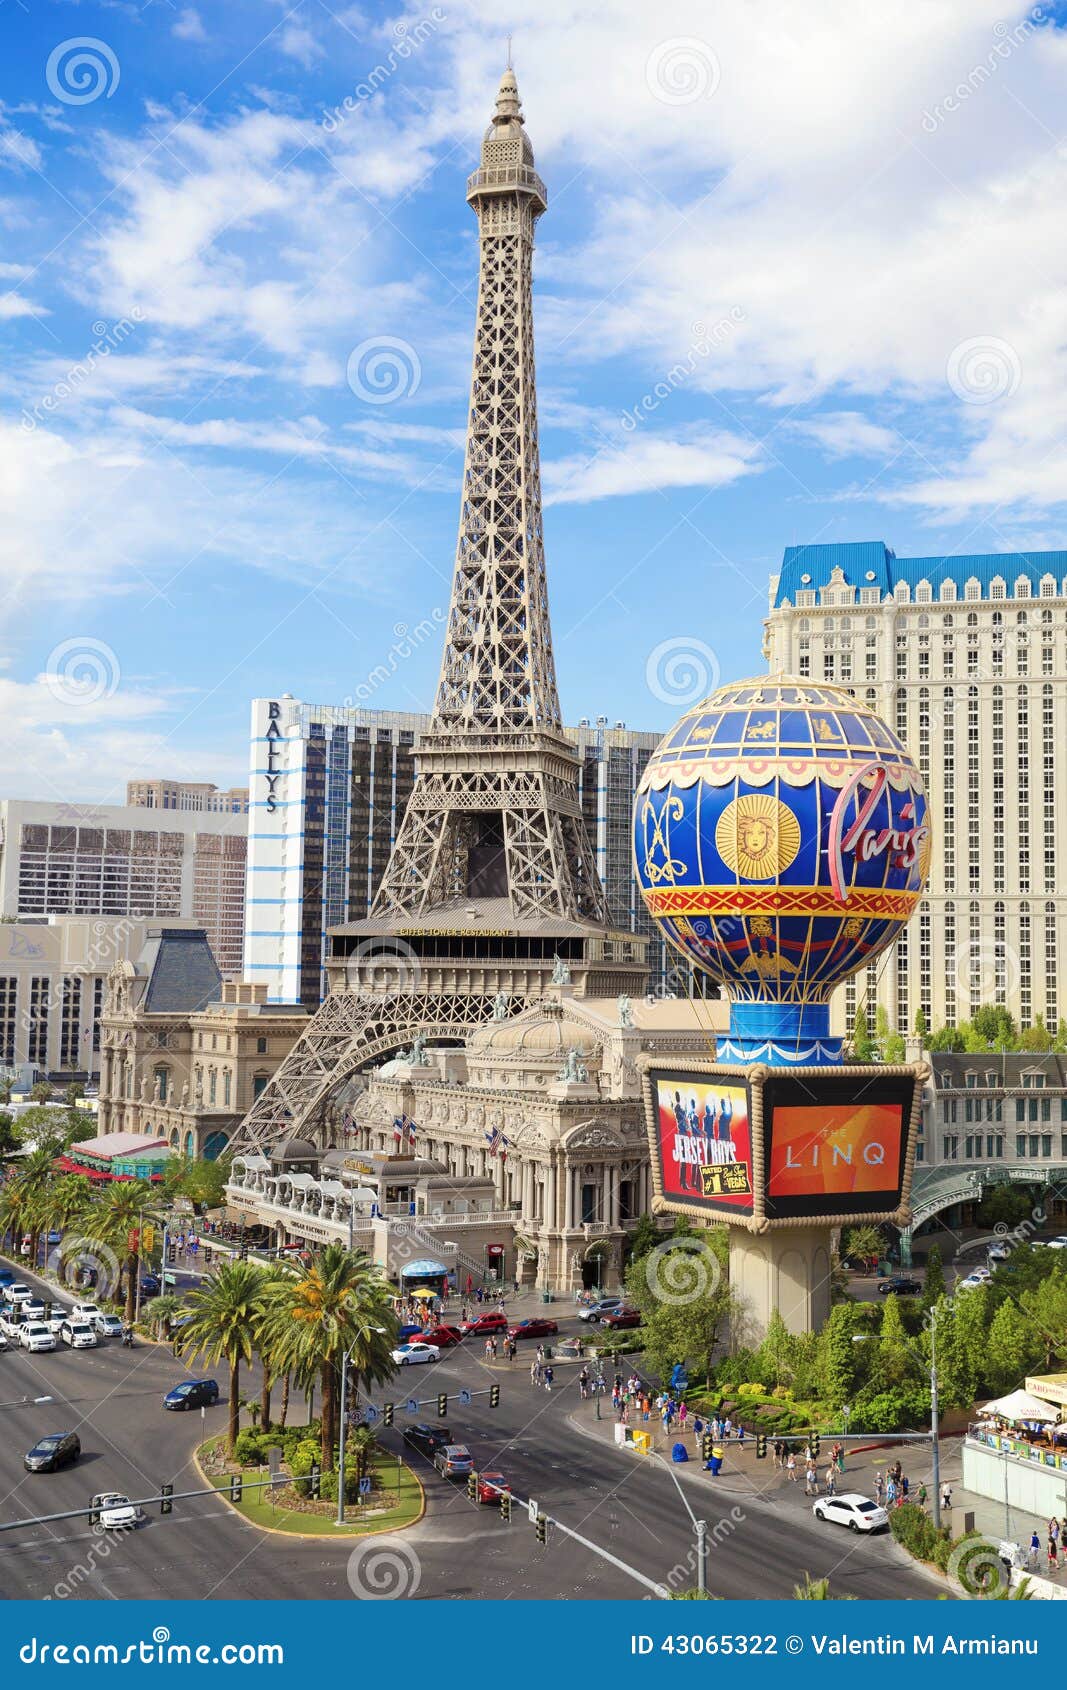 Paris Hotel Las Vegas  Paris hotel las vegas, Ballys hotel las vegas, Paris  casino